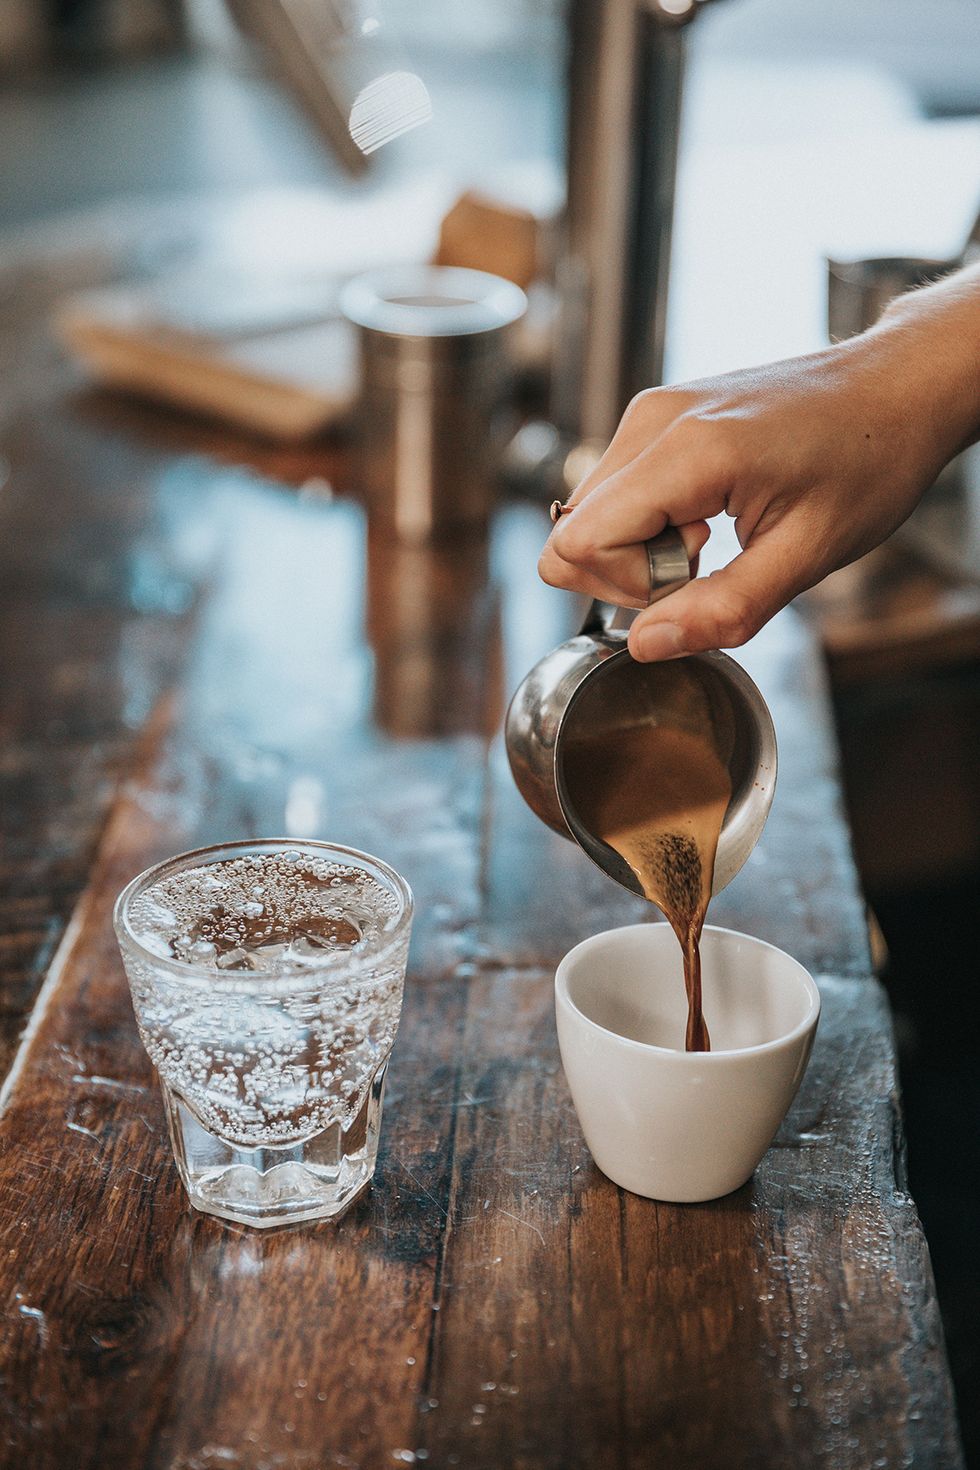 dieta e caffe: proprietà e benefici della cannella sul metabolismo